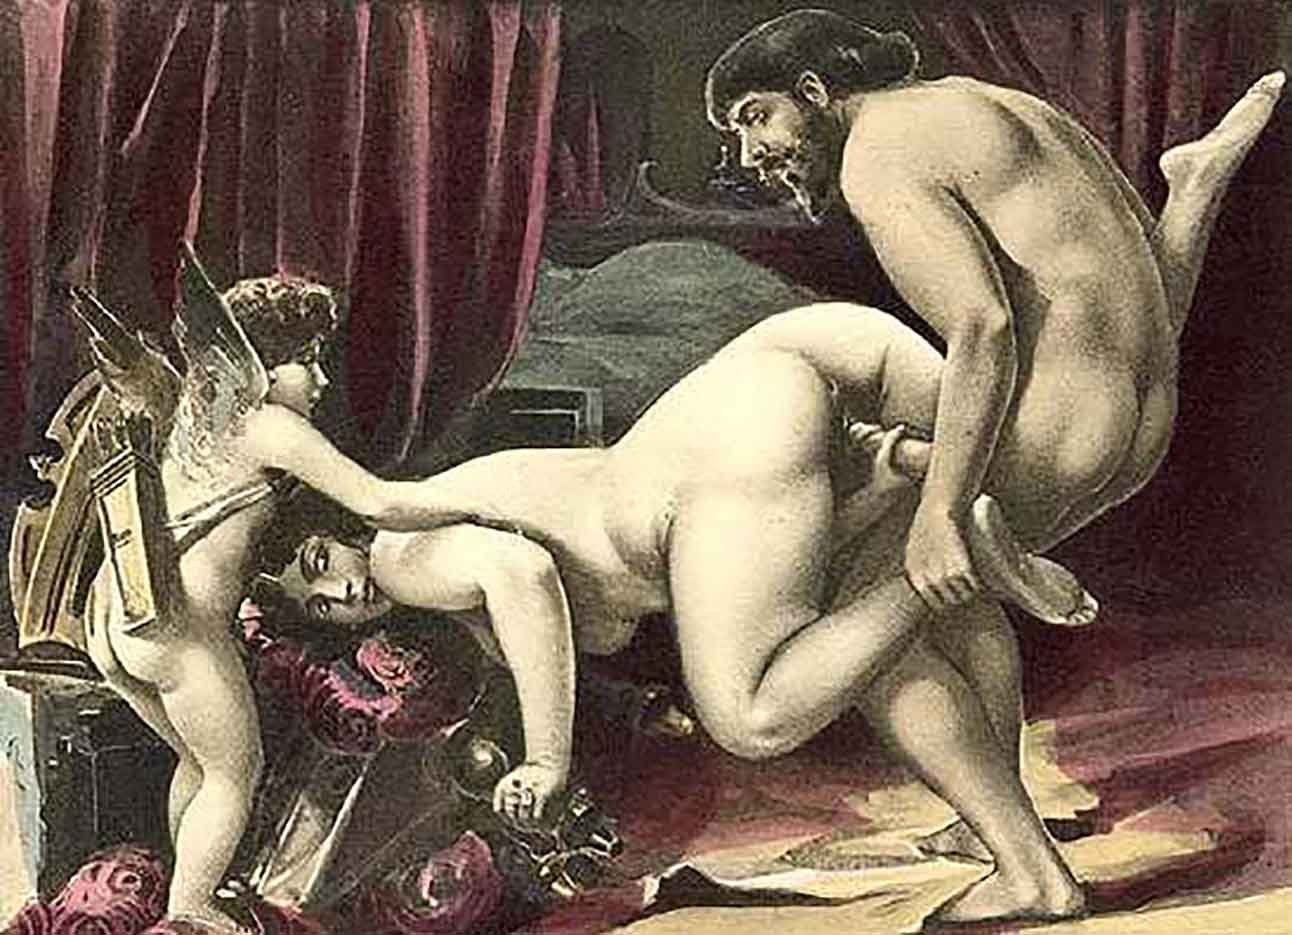 Секс древних людей ❤️ смотреть бесплатно порно роликов